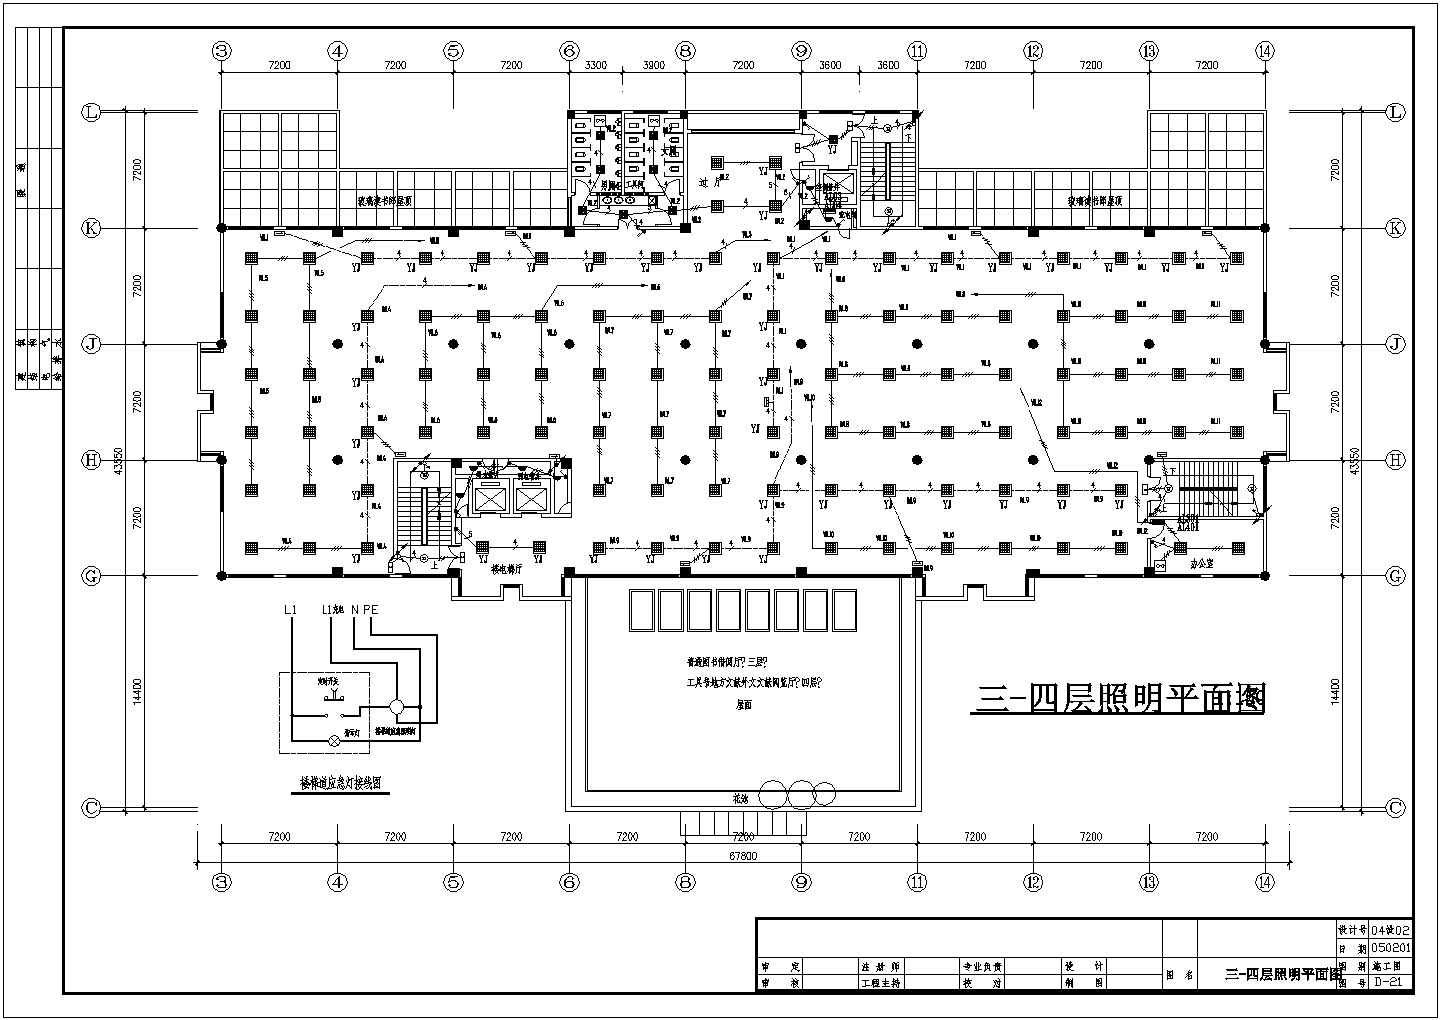 上海xx图书馆电施工设计方案全套CAD图纸